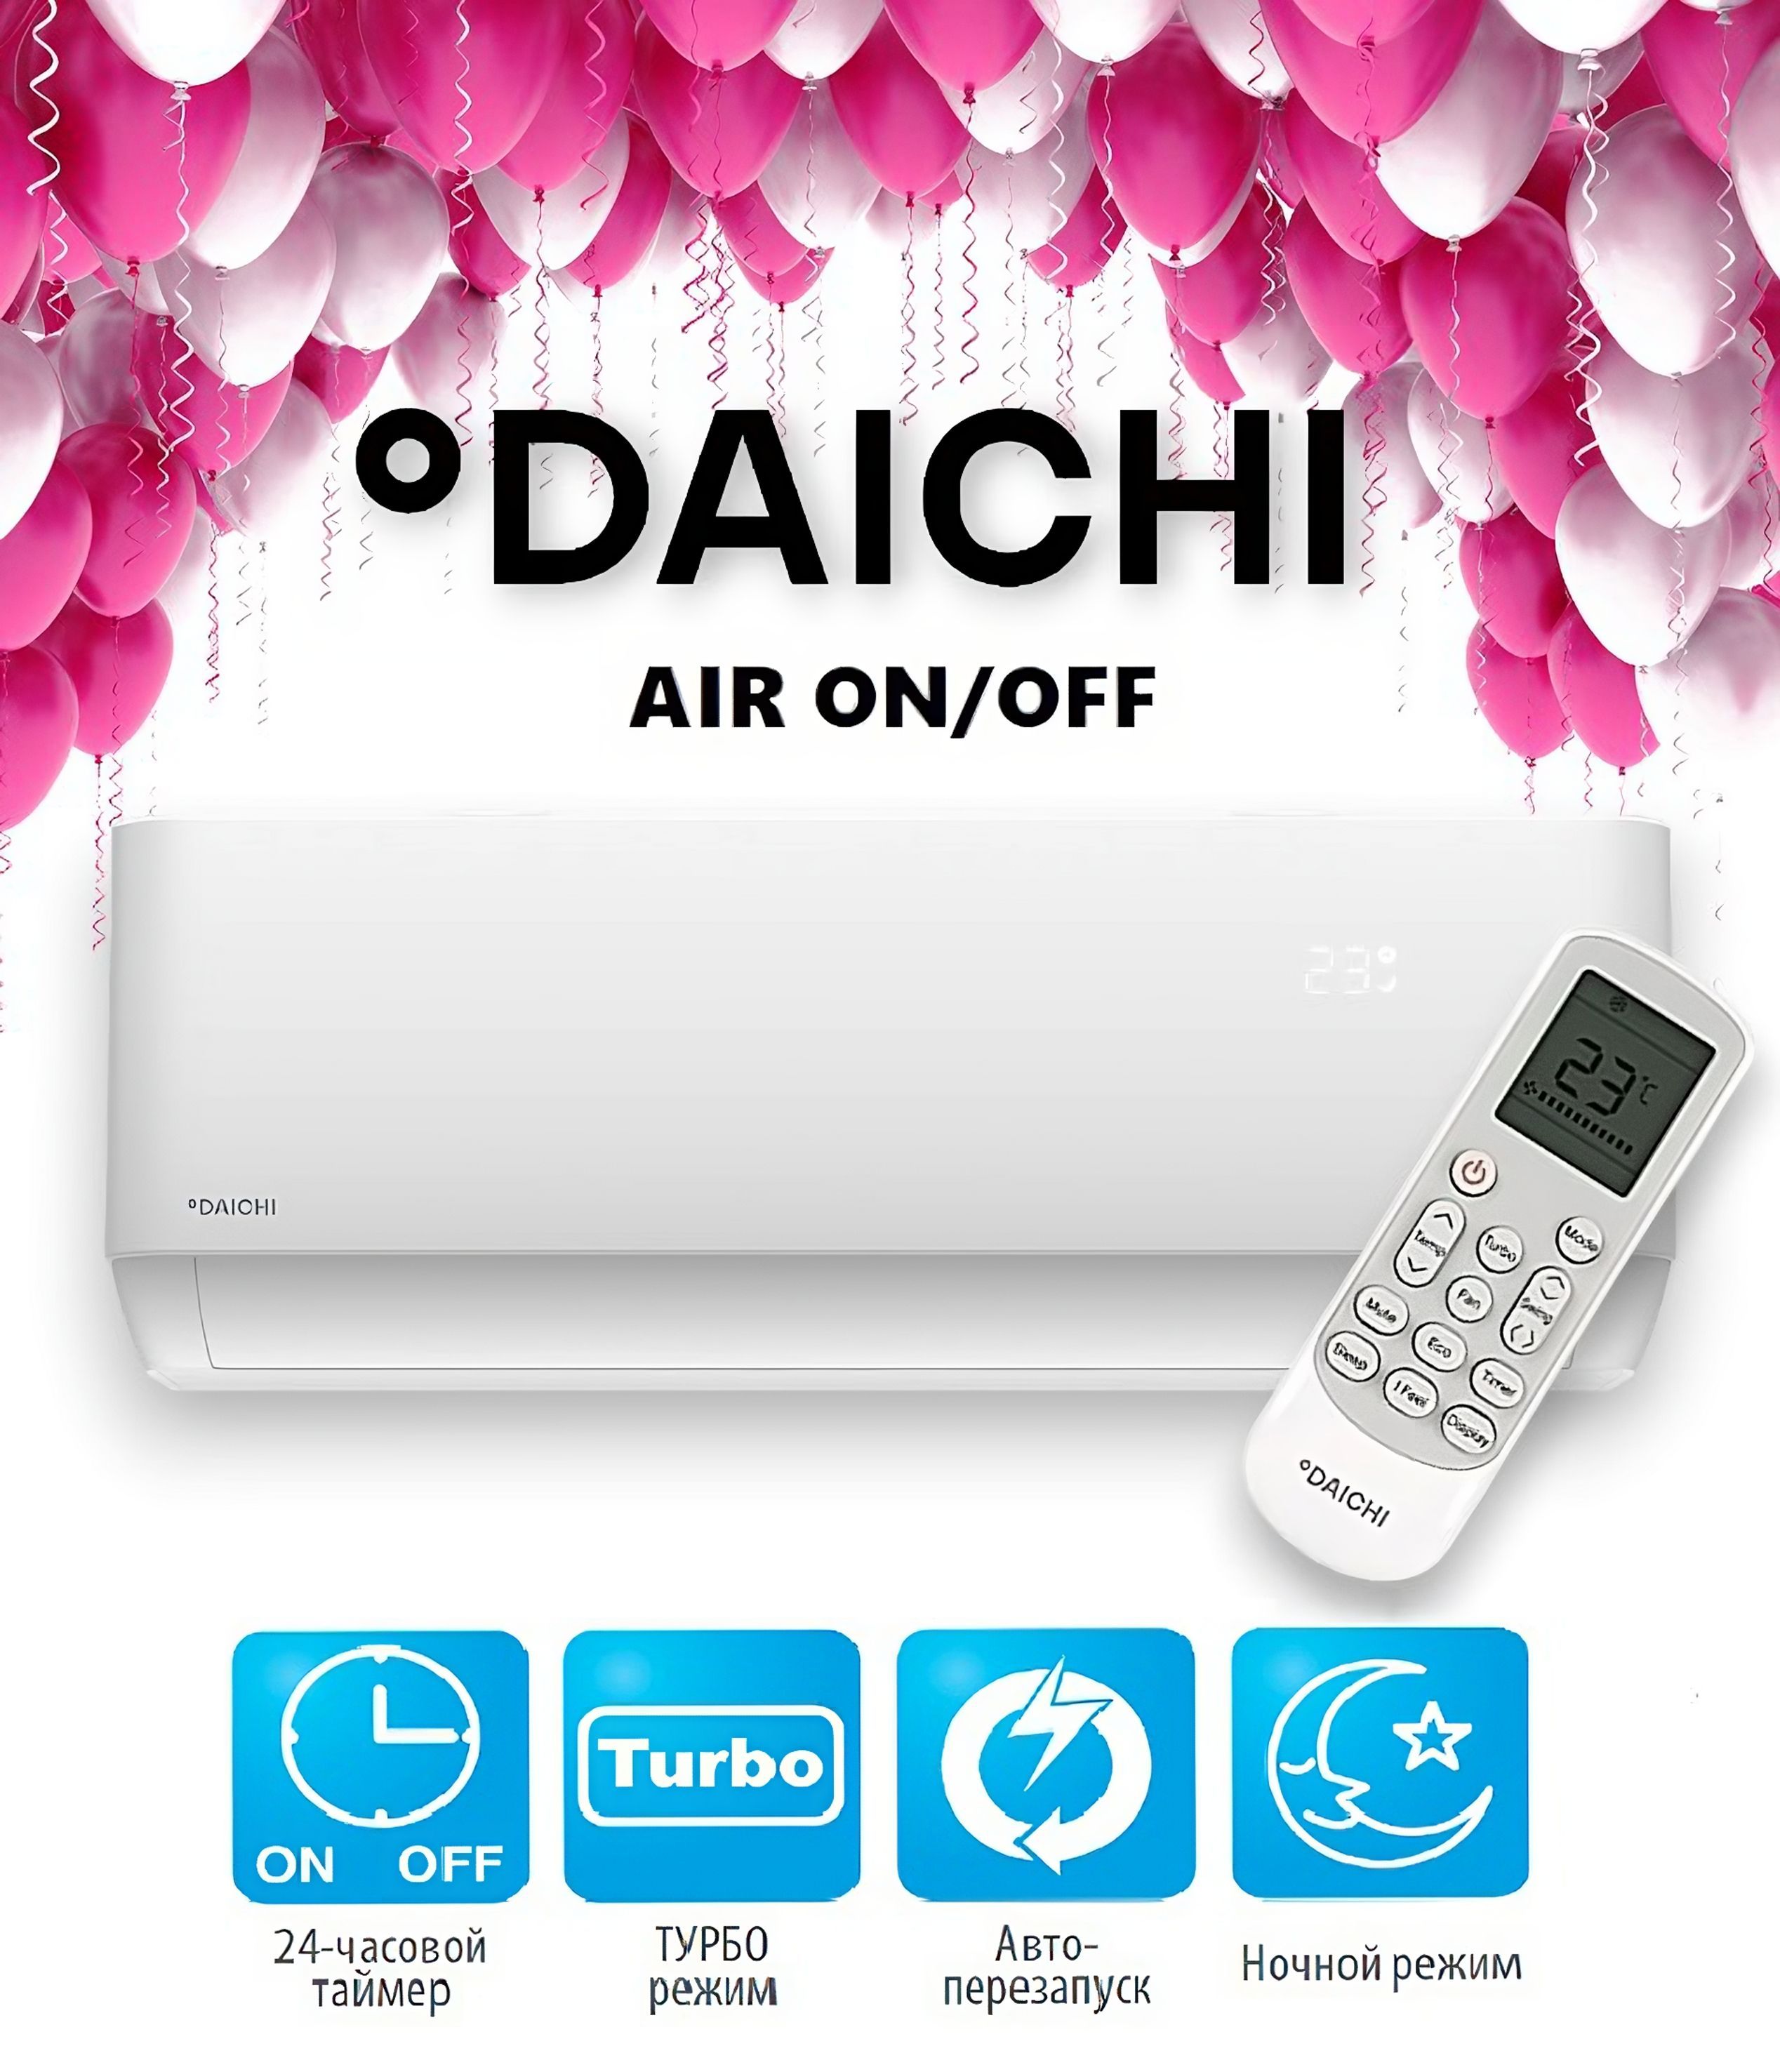 Daichi Air air25avq1/air25fv1. Daichi Air 20. Daichi air25avq1/air25fv1 сертификат. Daichi Air Air air20avq1/air20fv1 USB.